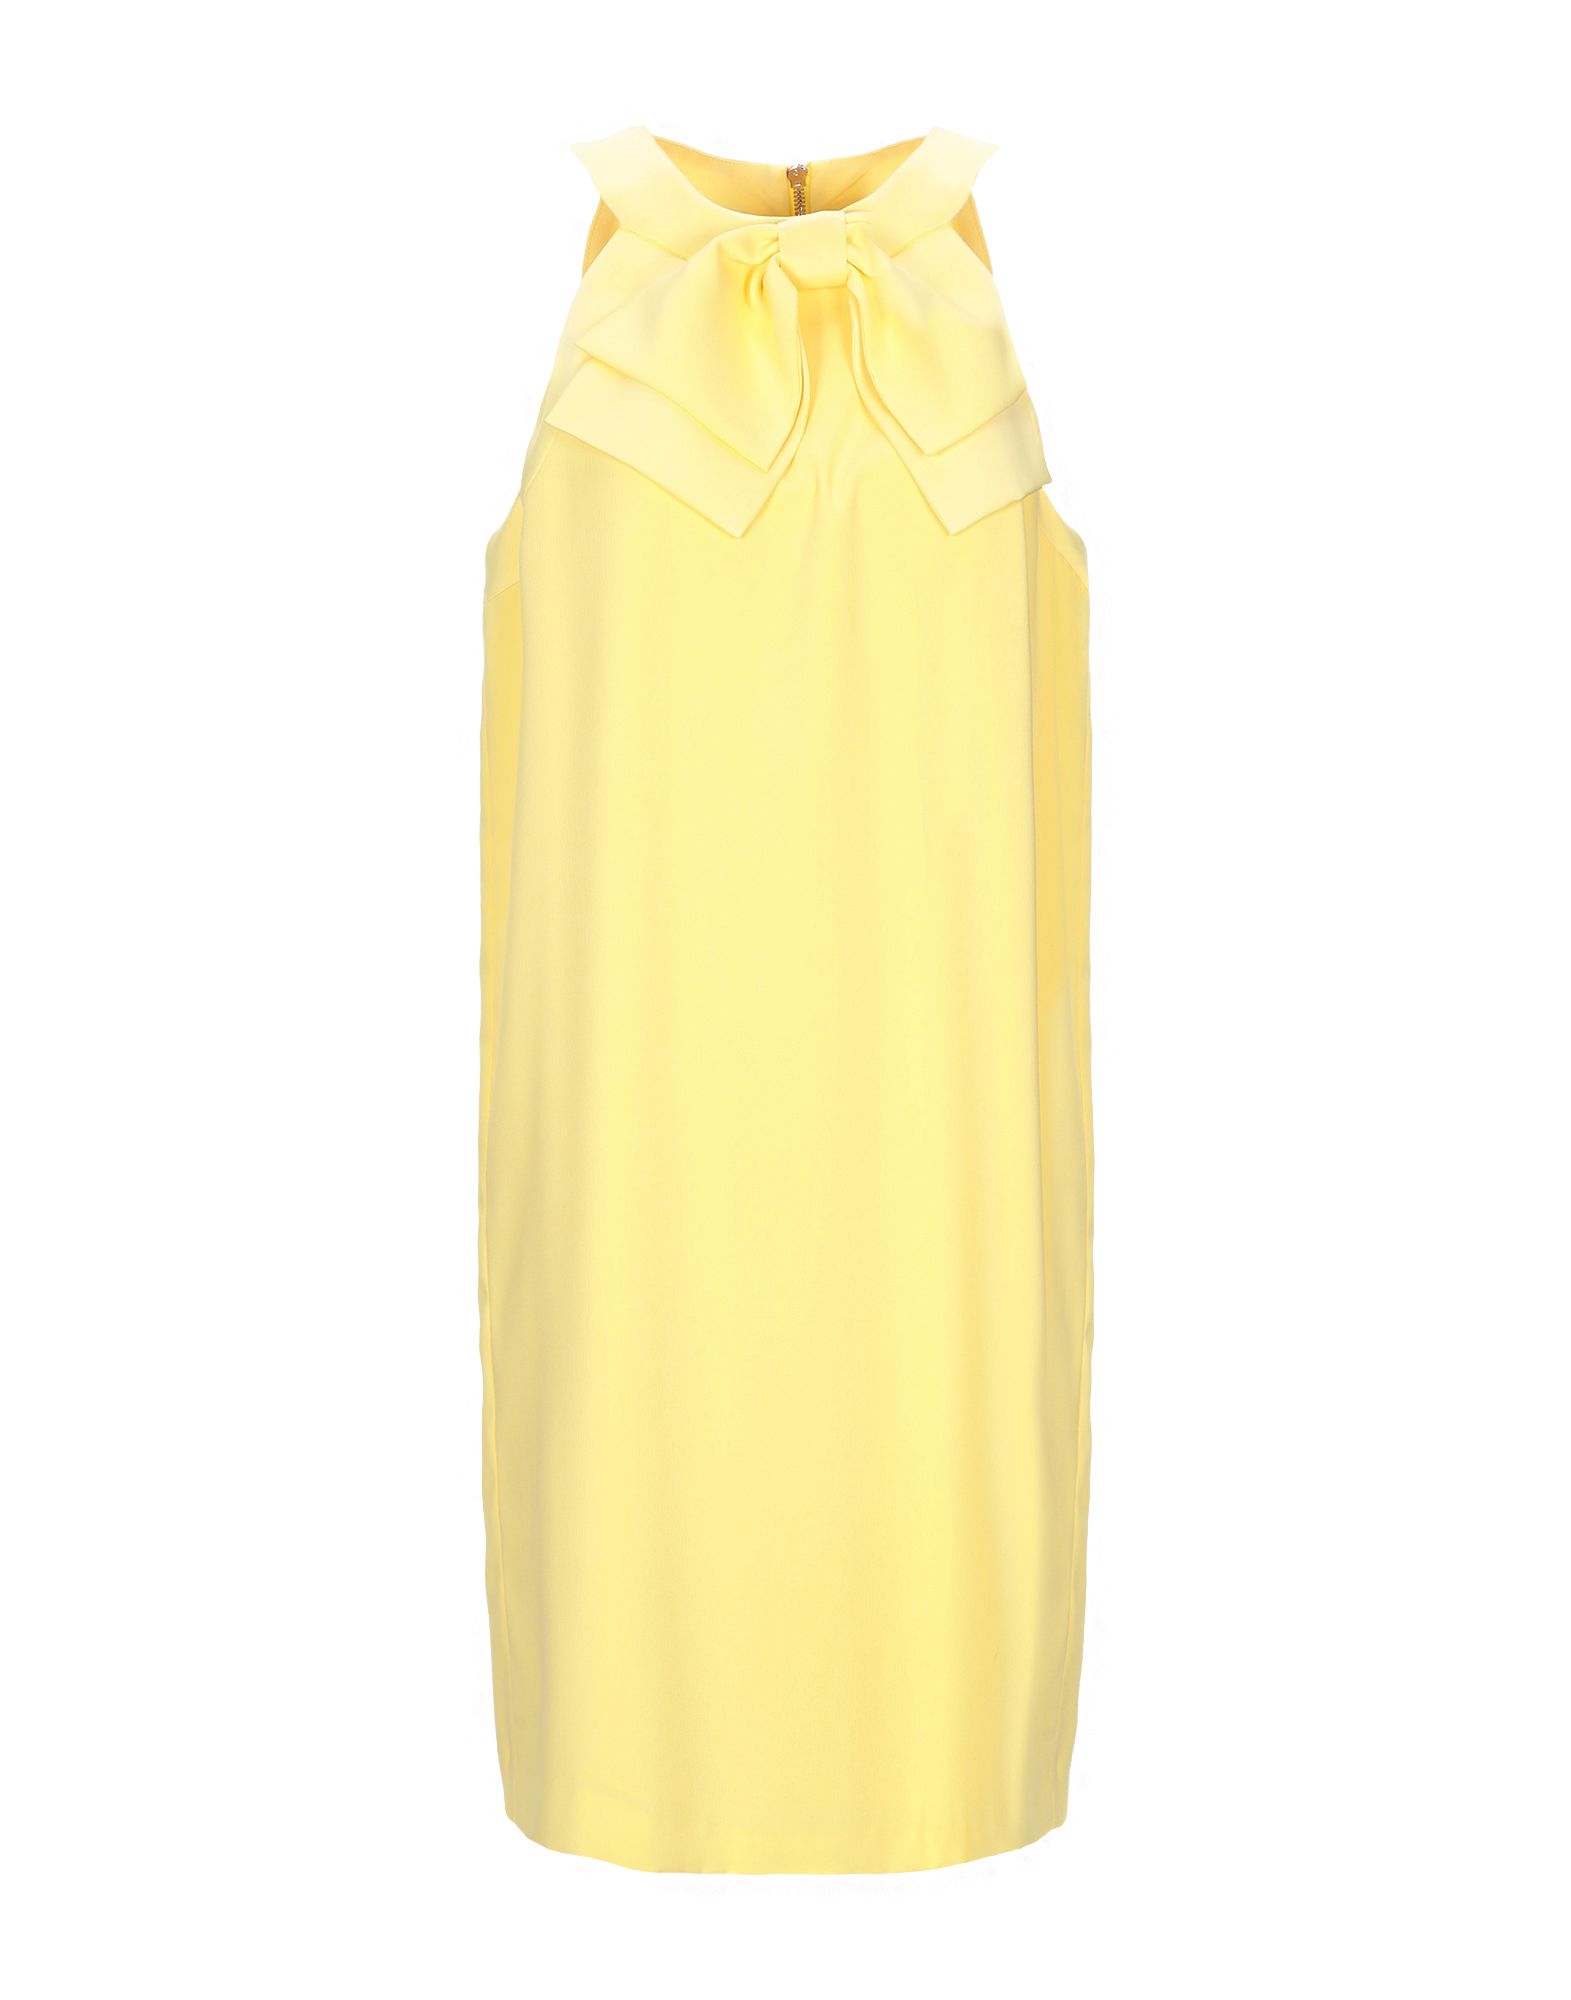 Короткое платье  - Желтый цвет